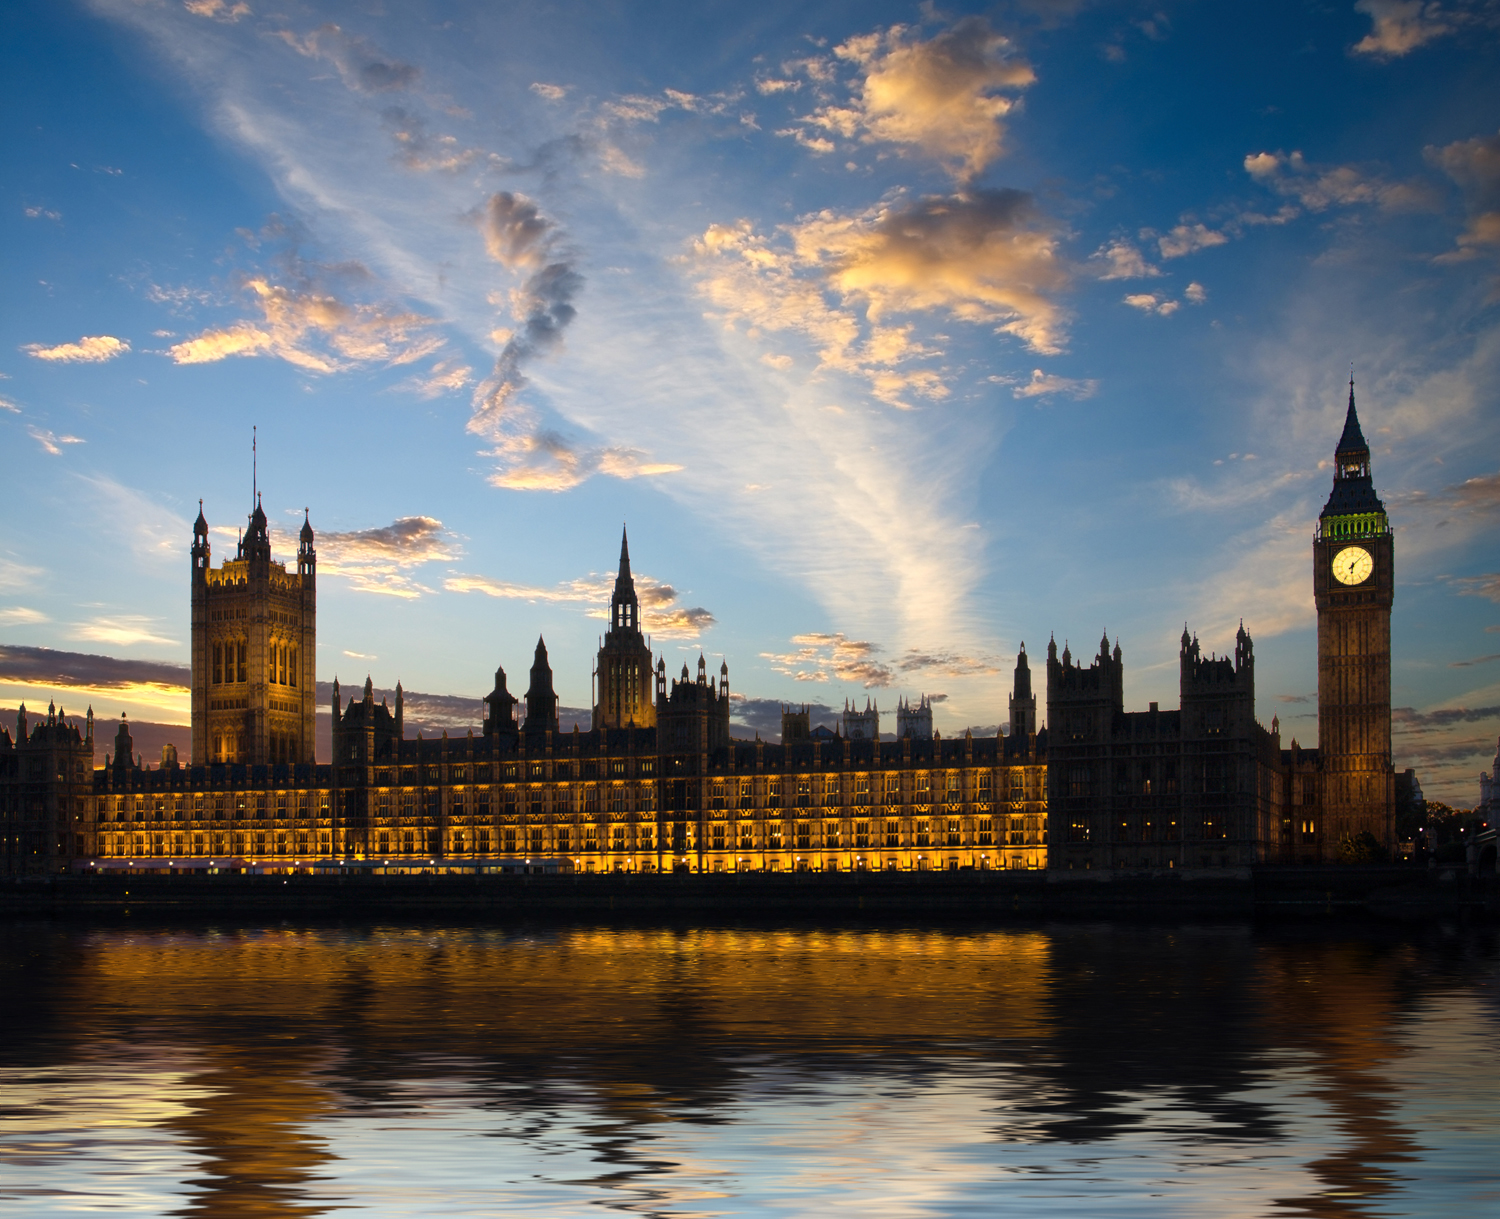 Parlament v Londýně